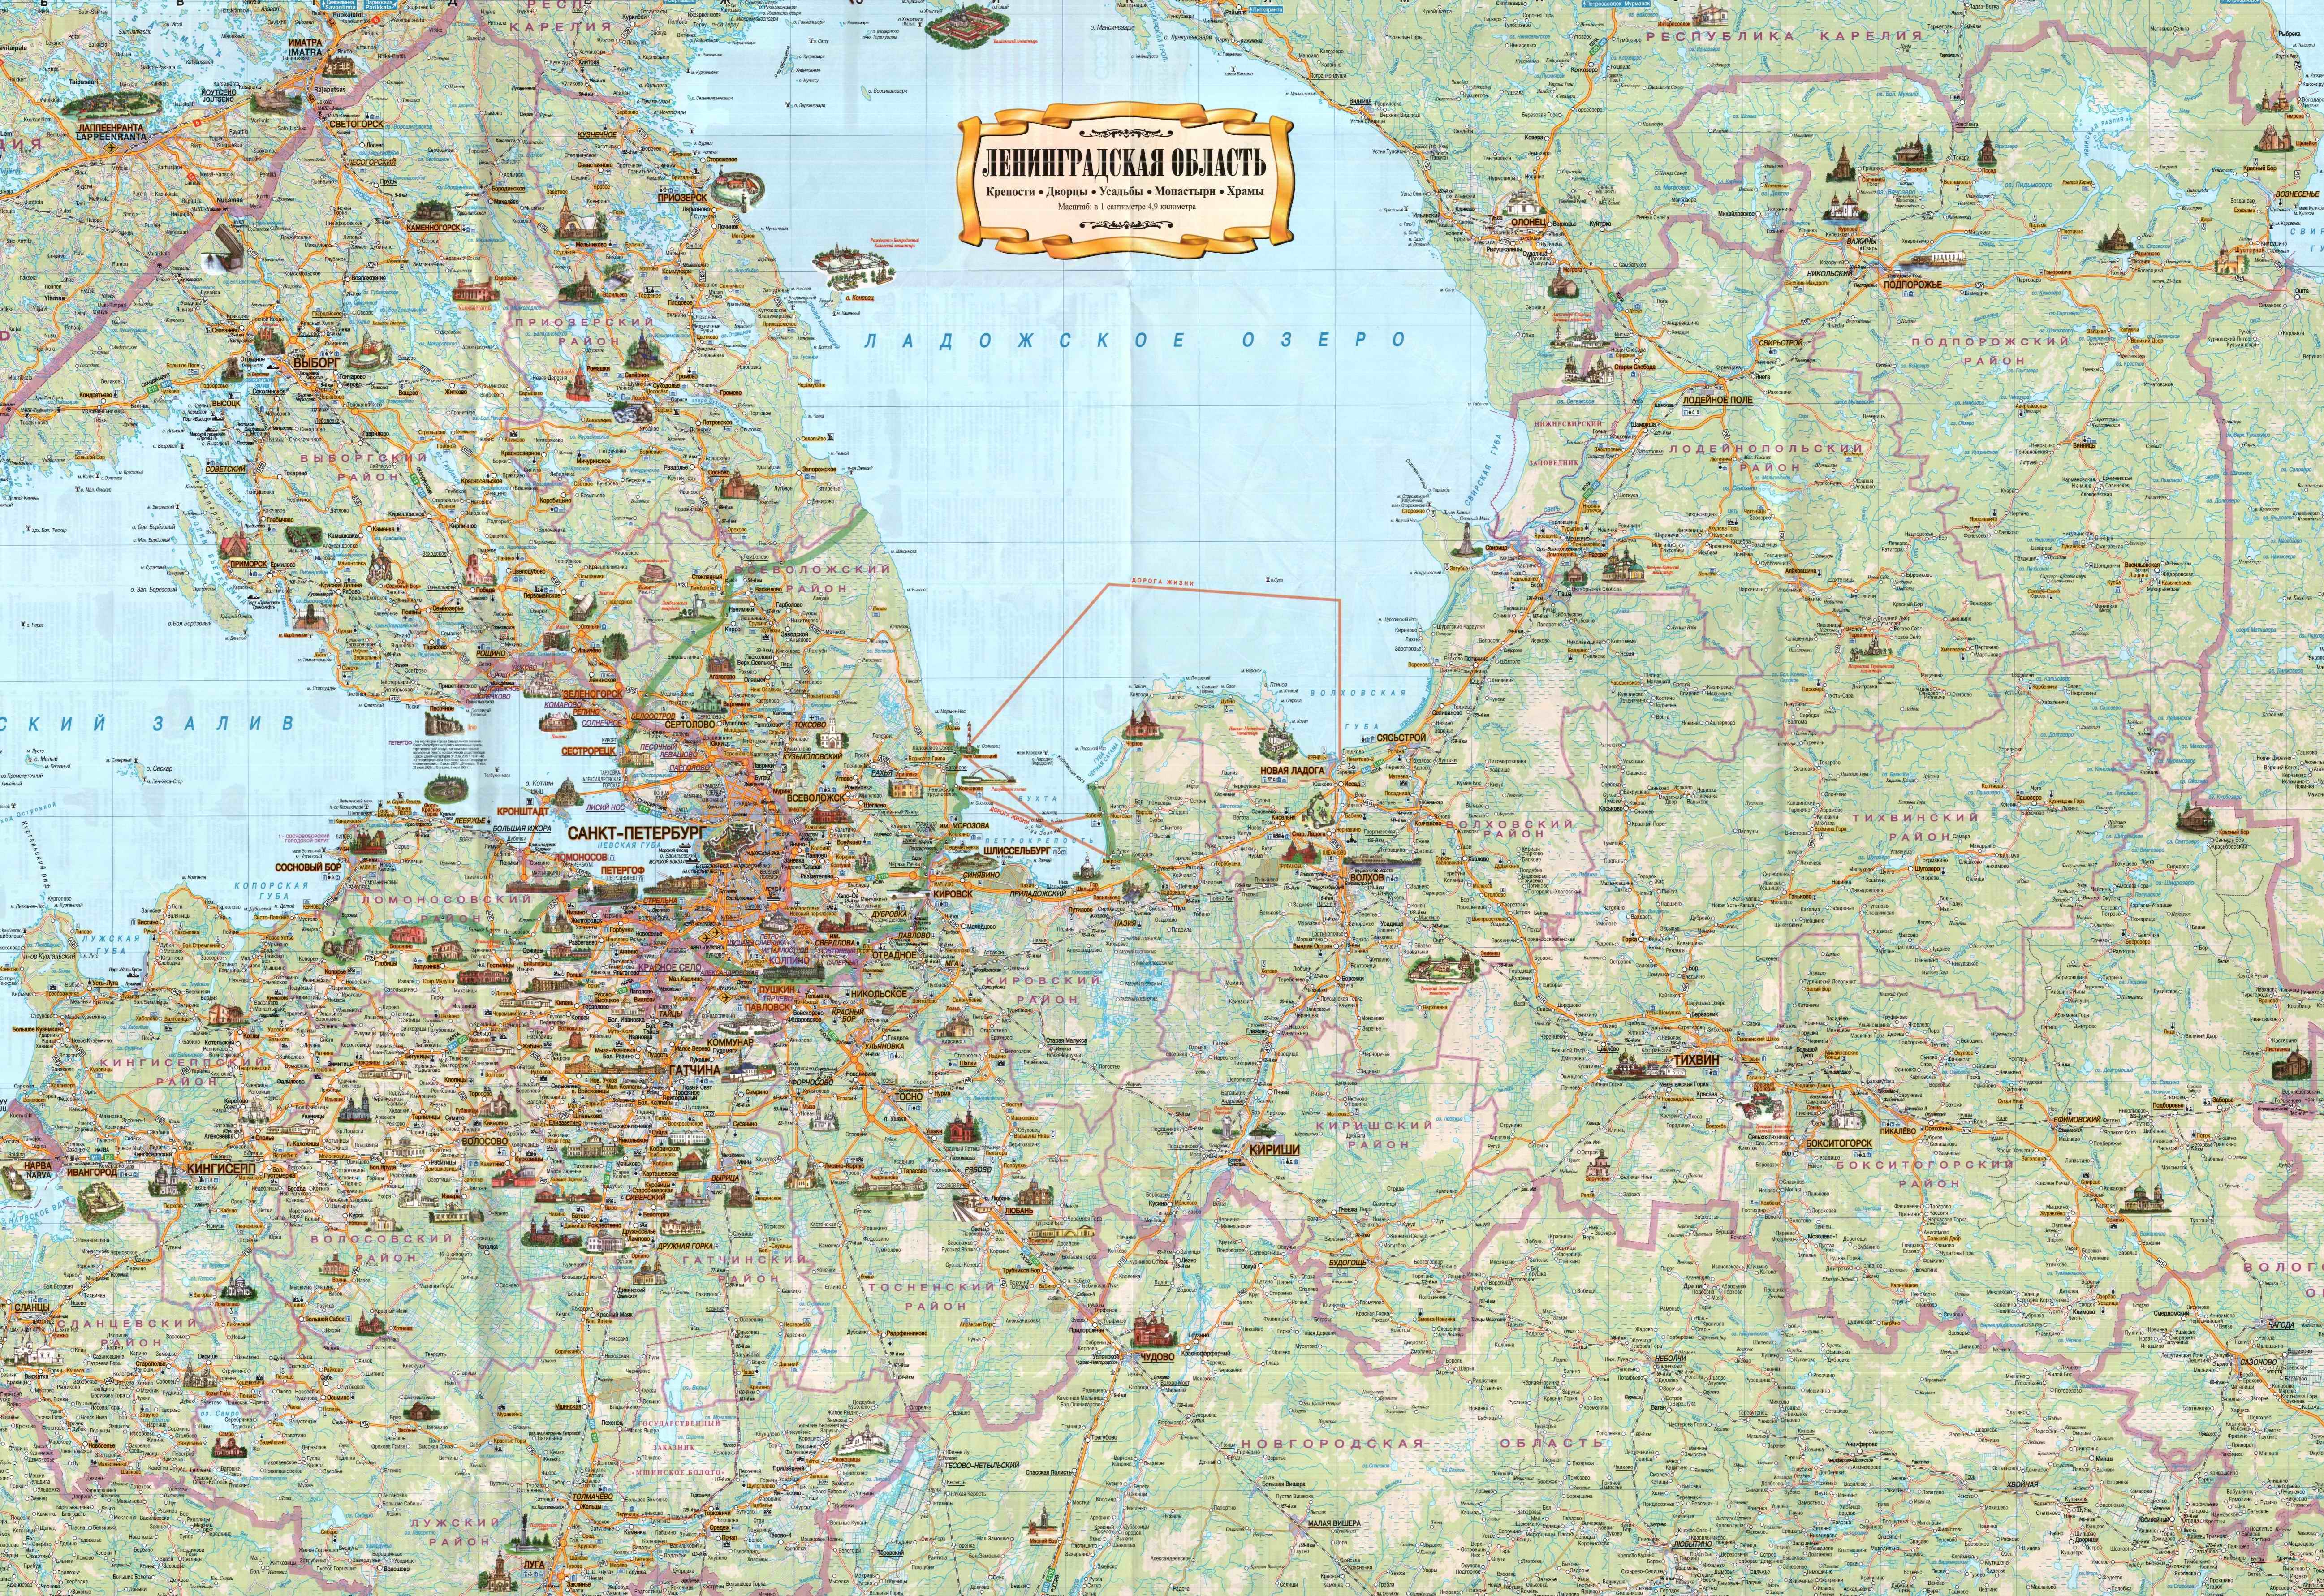 Карта высот ленинградской области подробная